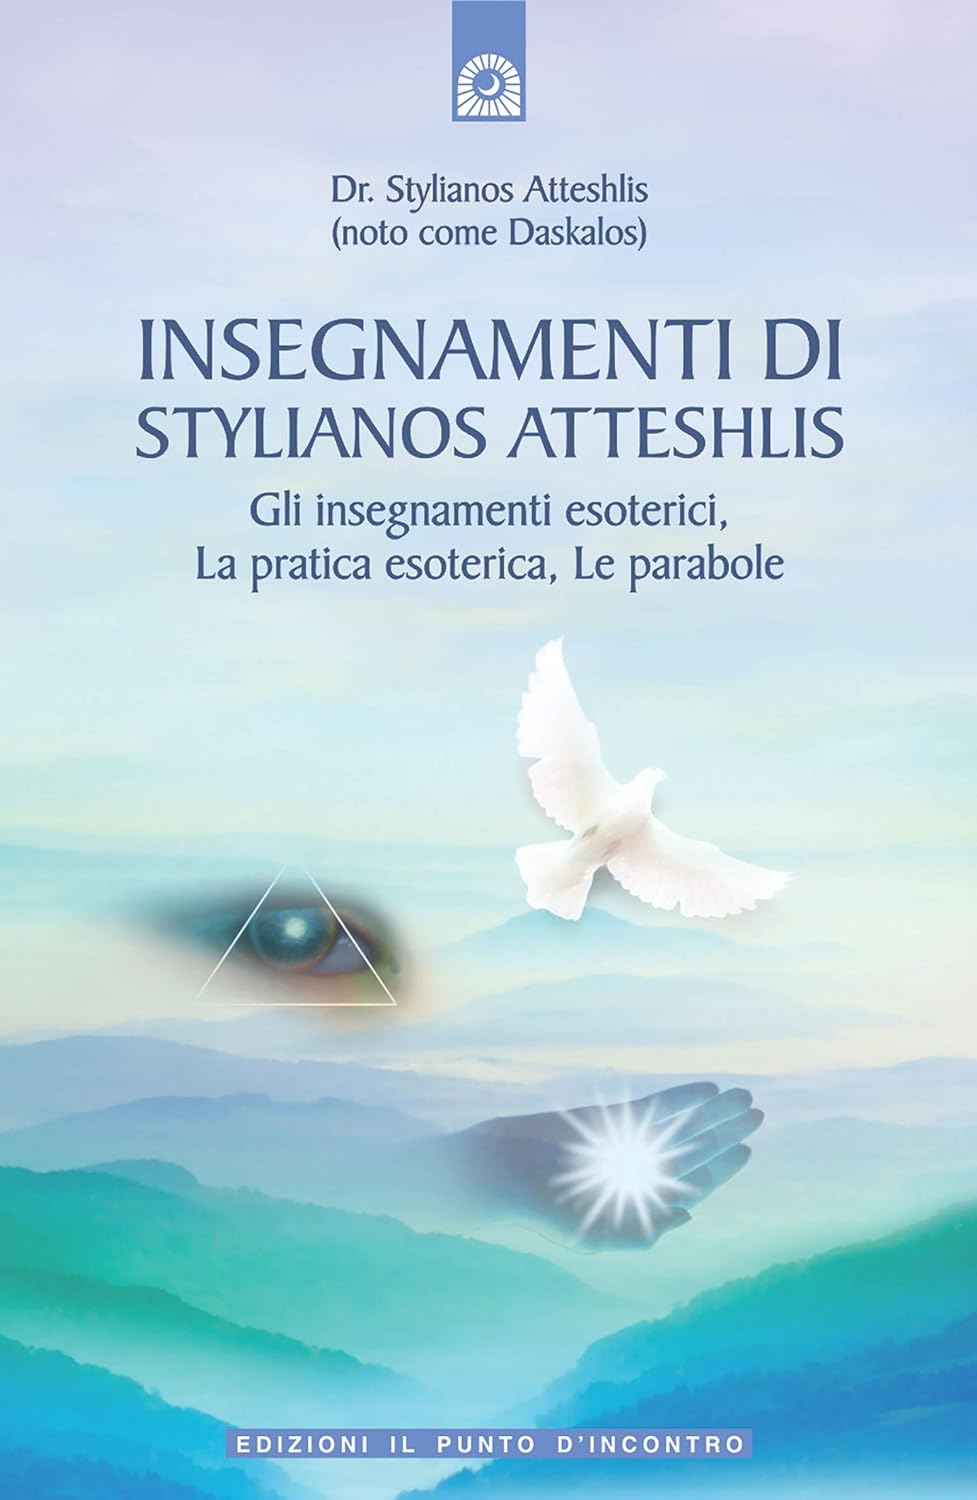 Insegnamenti di Stylianos Atteshlis. Gli insegnamenti esoterici, la pratica esoterica, le parabole.